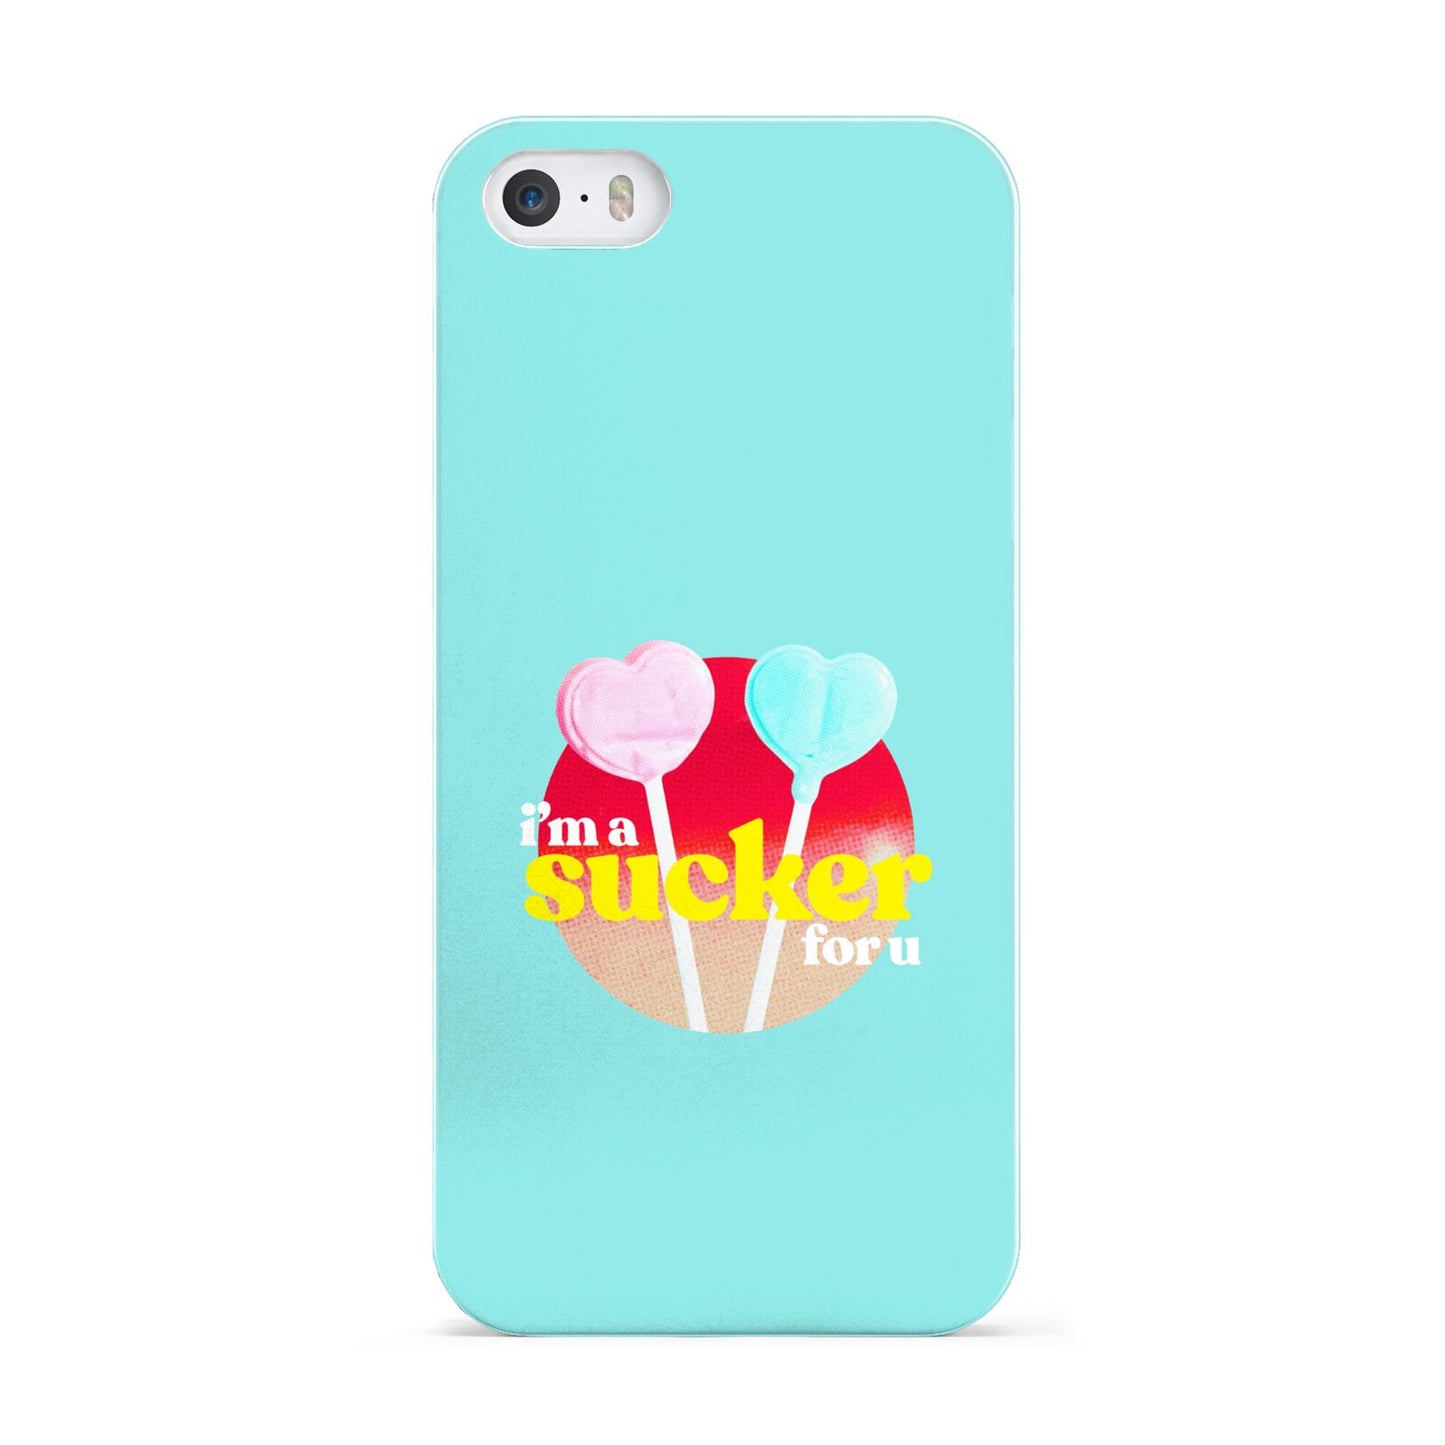 Retro Valentine Apple iPhone 5 Case